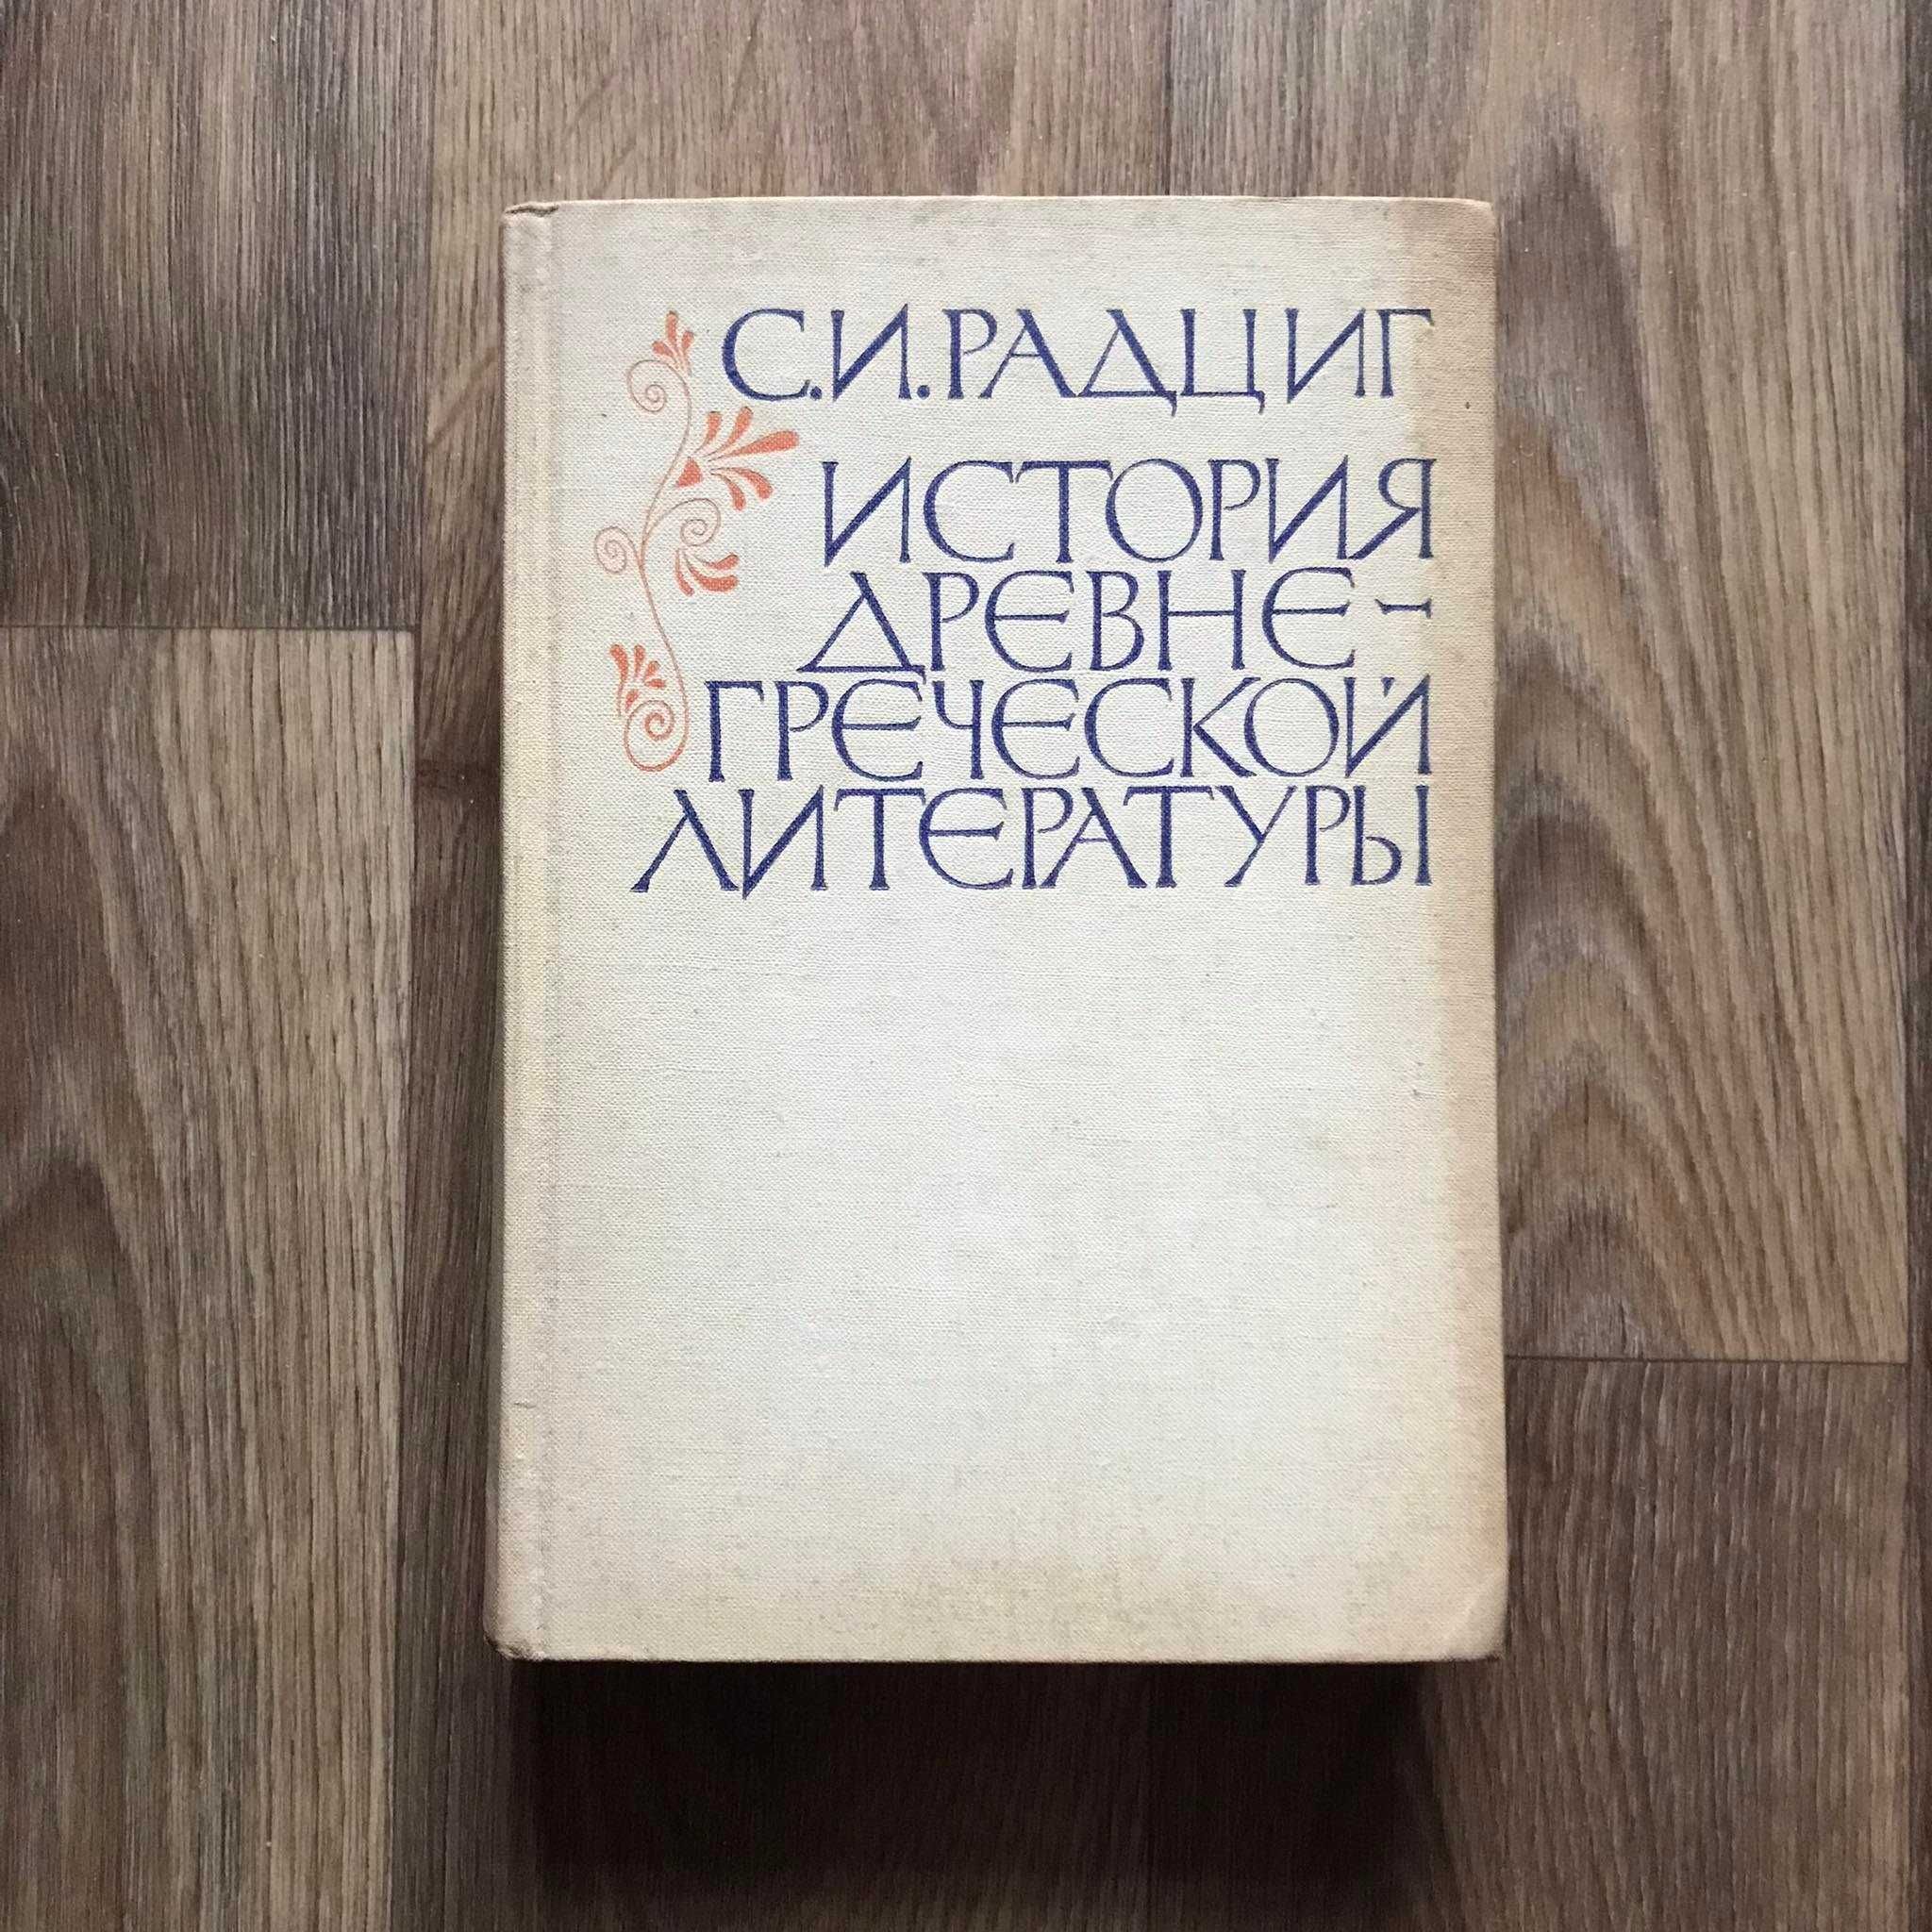 Книга Радциг С.И. "История древнегреческой литературы" 1969 год